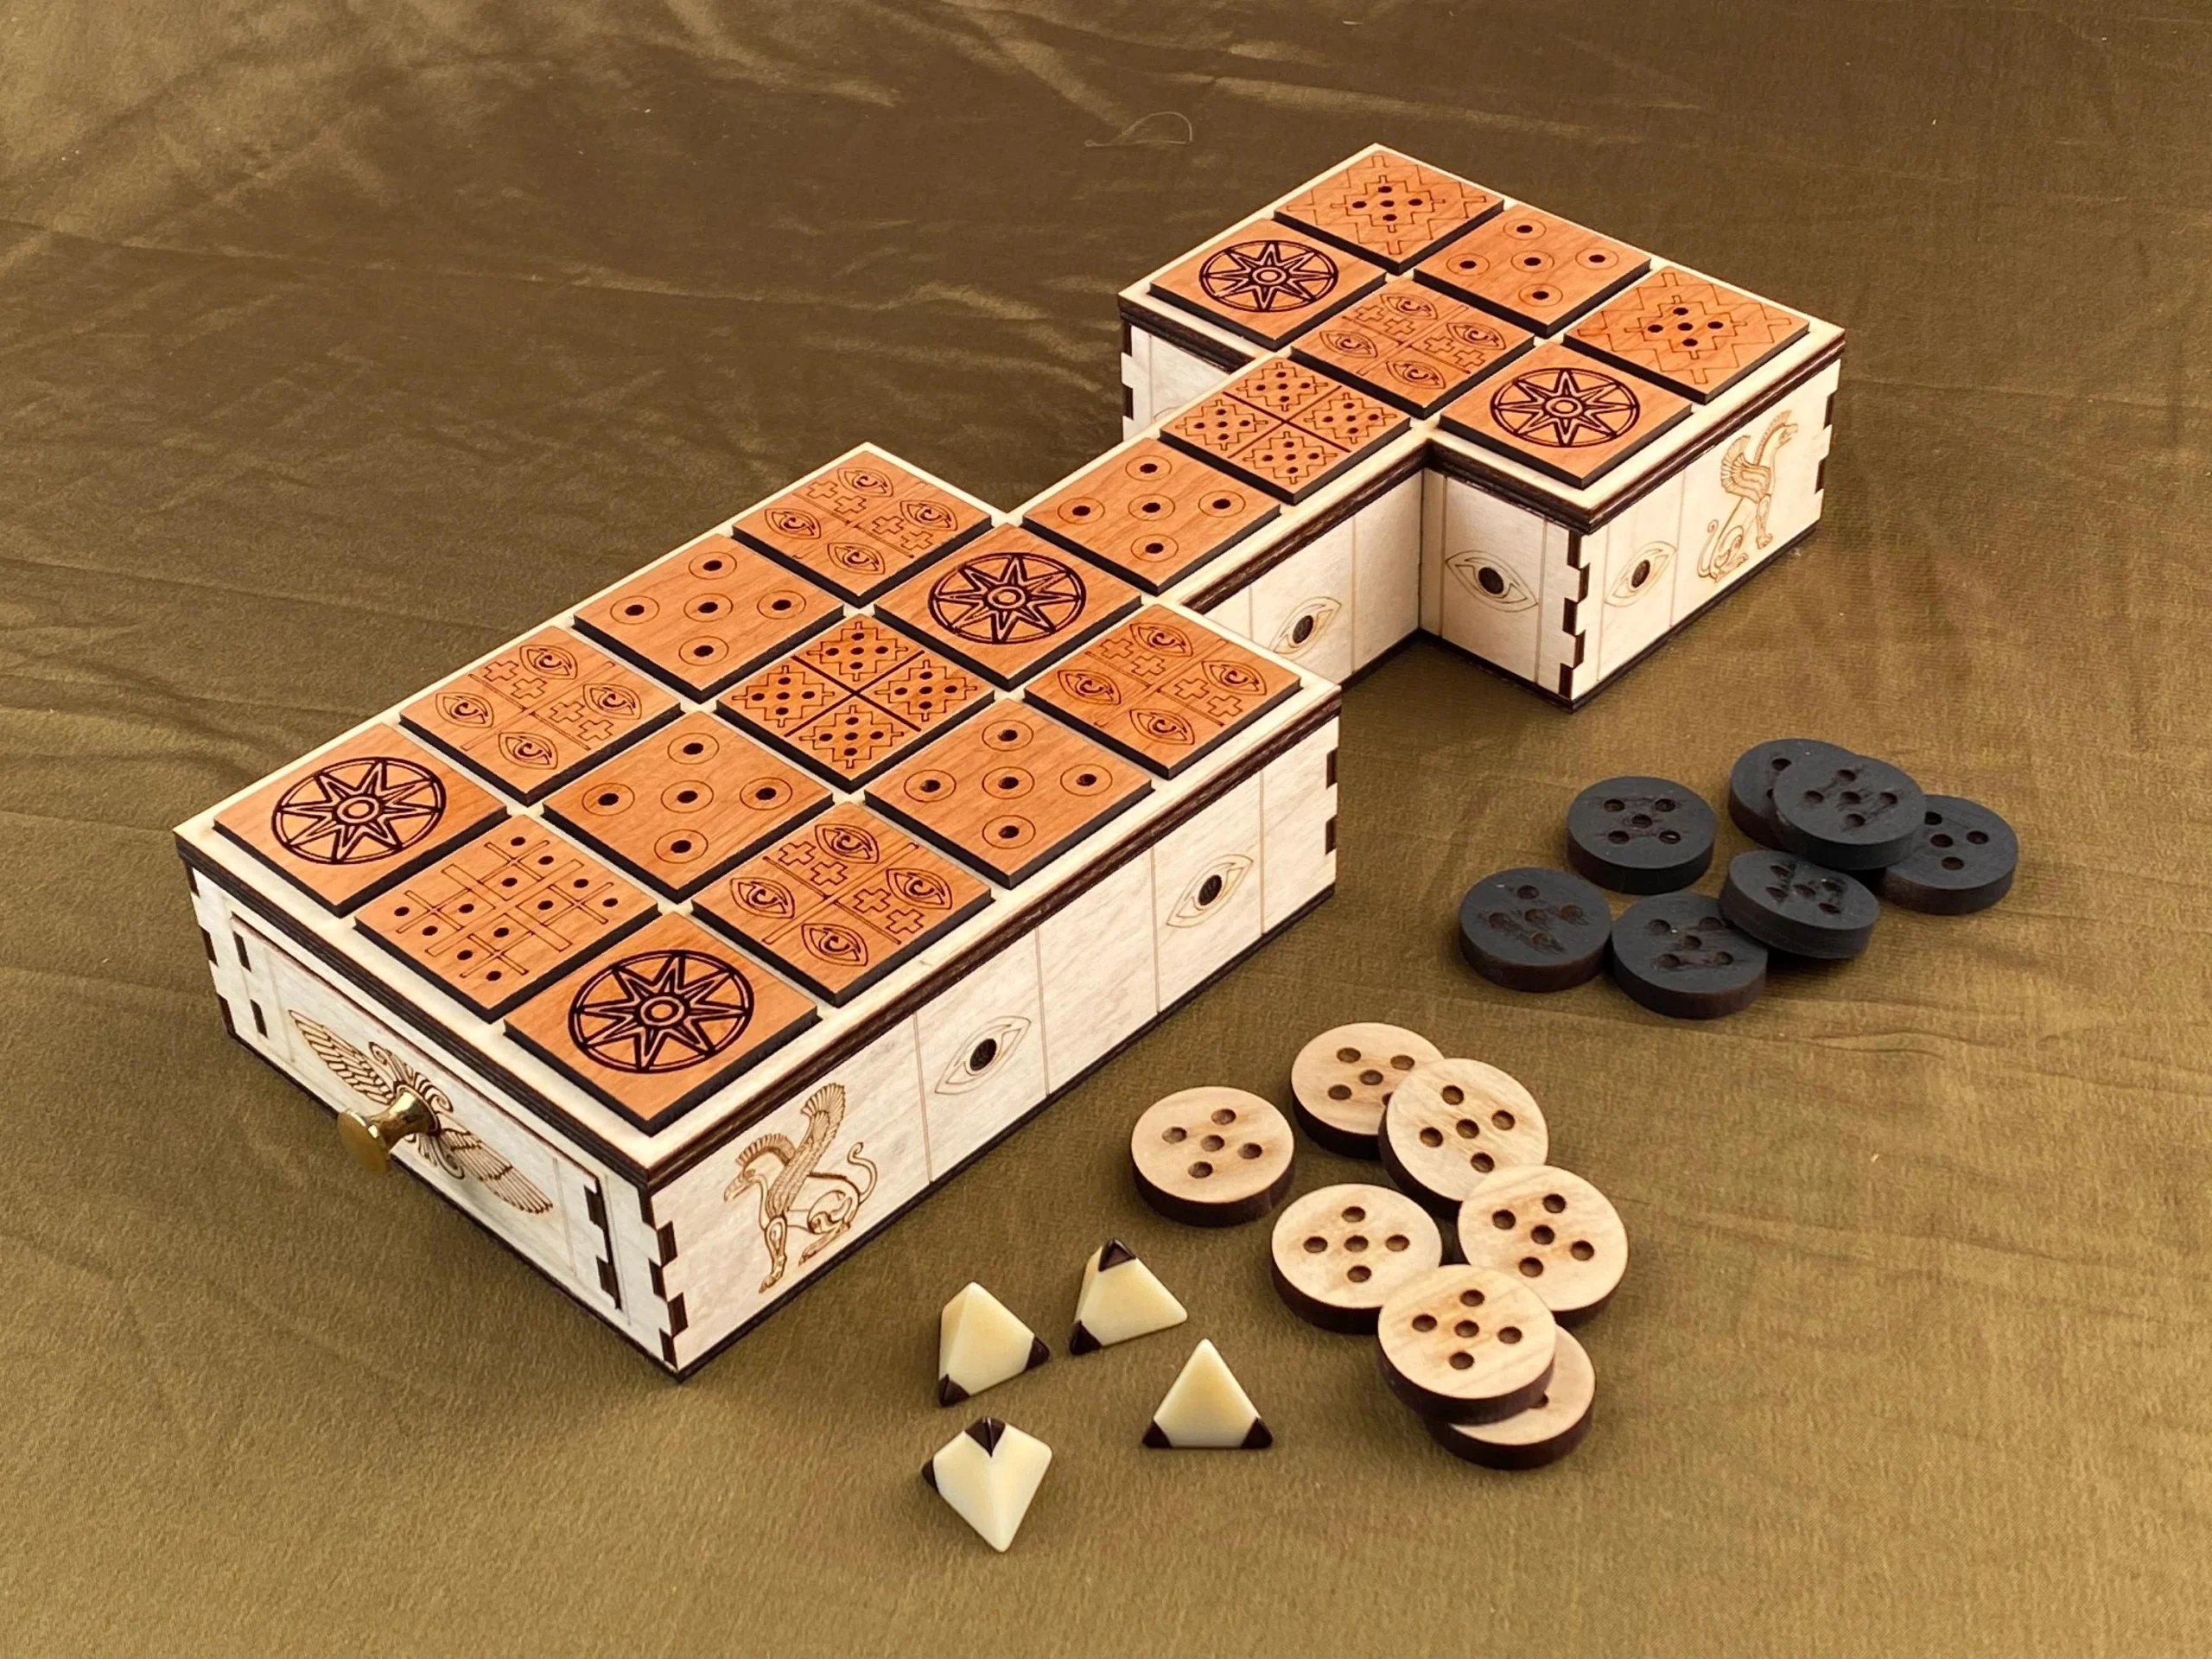 juego de mesa mesopotamia - Qué juegos jugaban en Mesopotamia